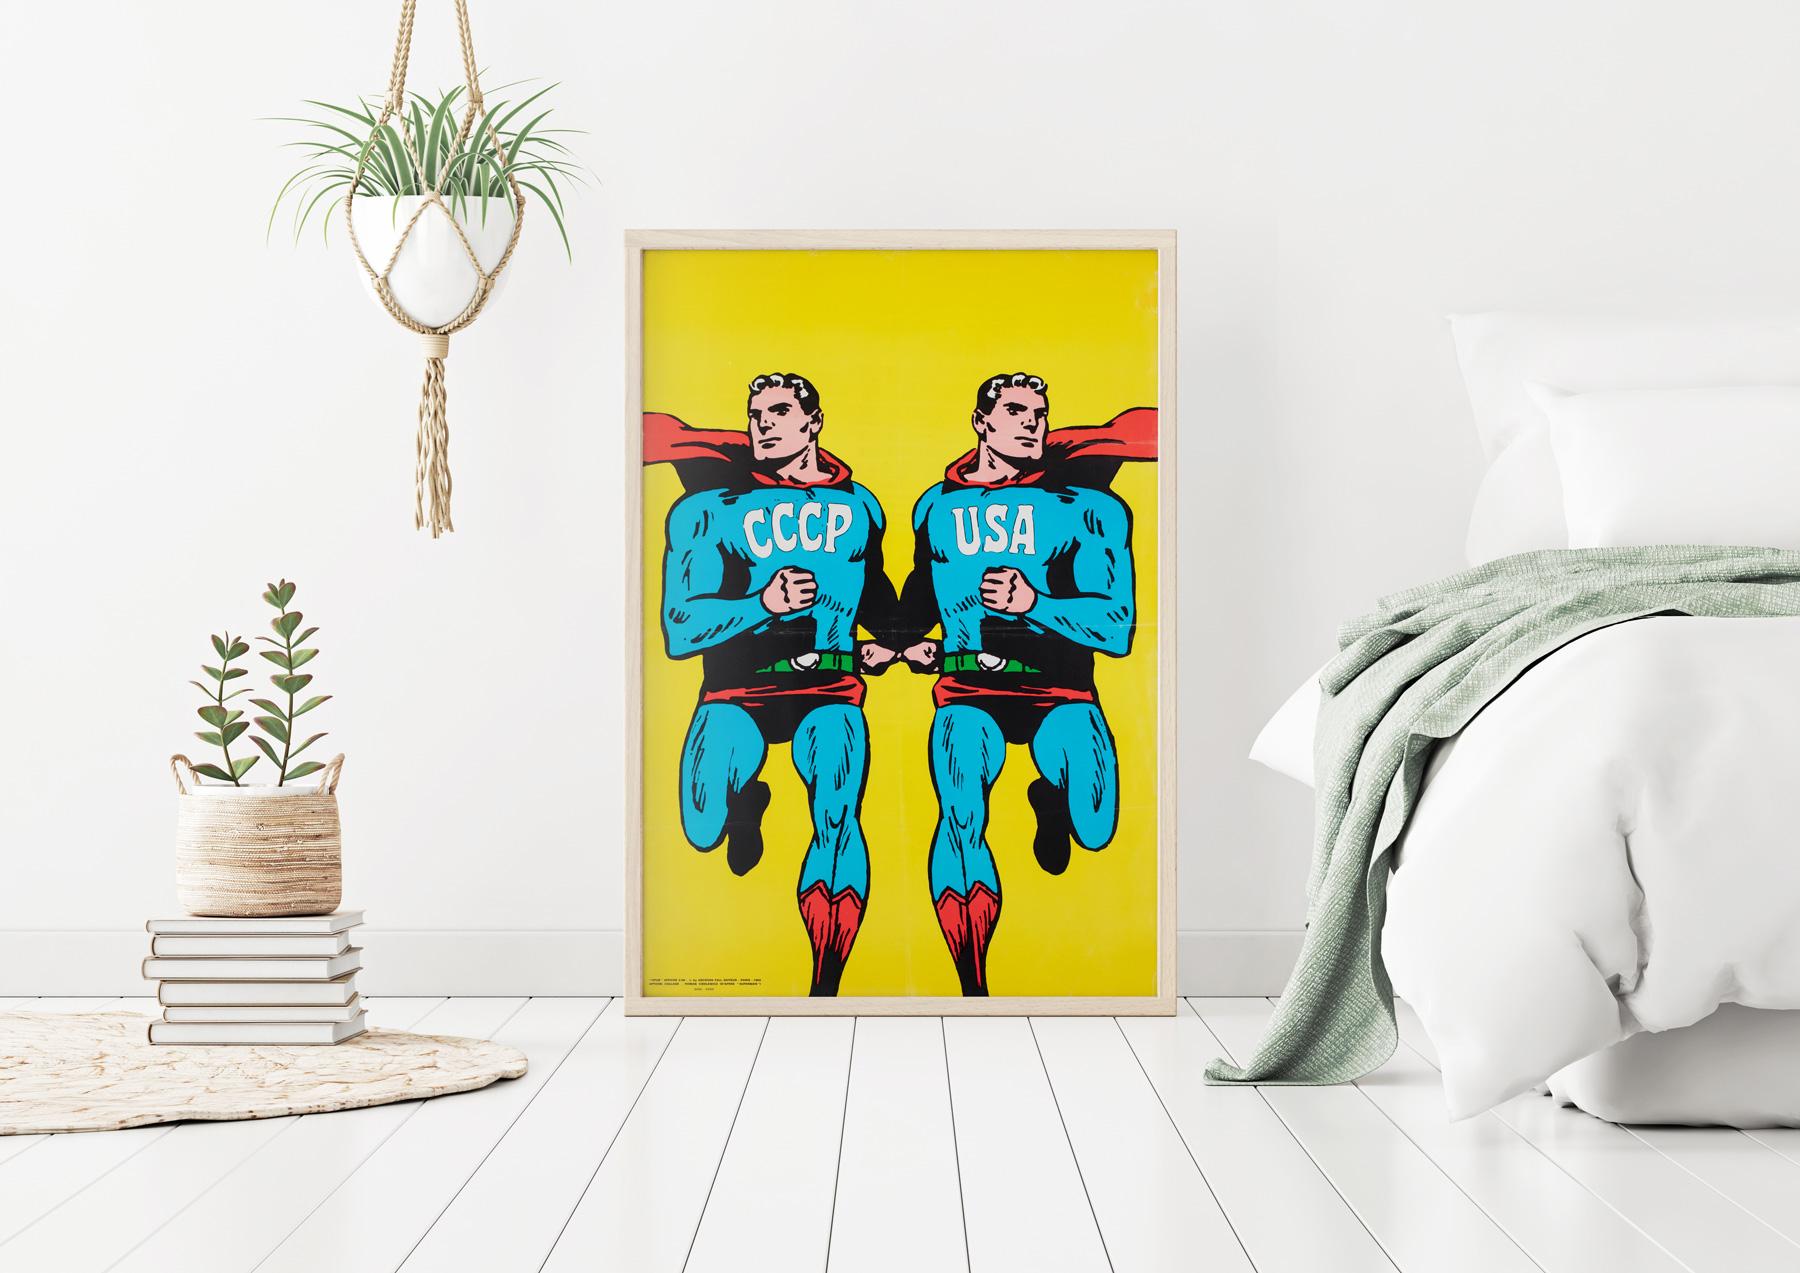 Une superbe affiche de Superman de 1968 !  

Original 1968 Guerre froide  Affiche de Roman Cieslewicz USSR / CCCP USA. Créé pour la couverture du magazine d'art français de gauche 